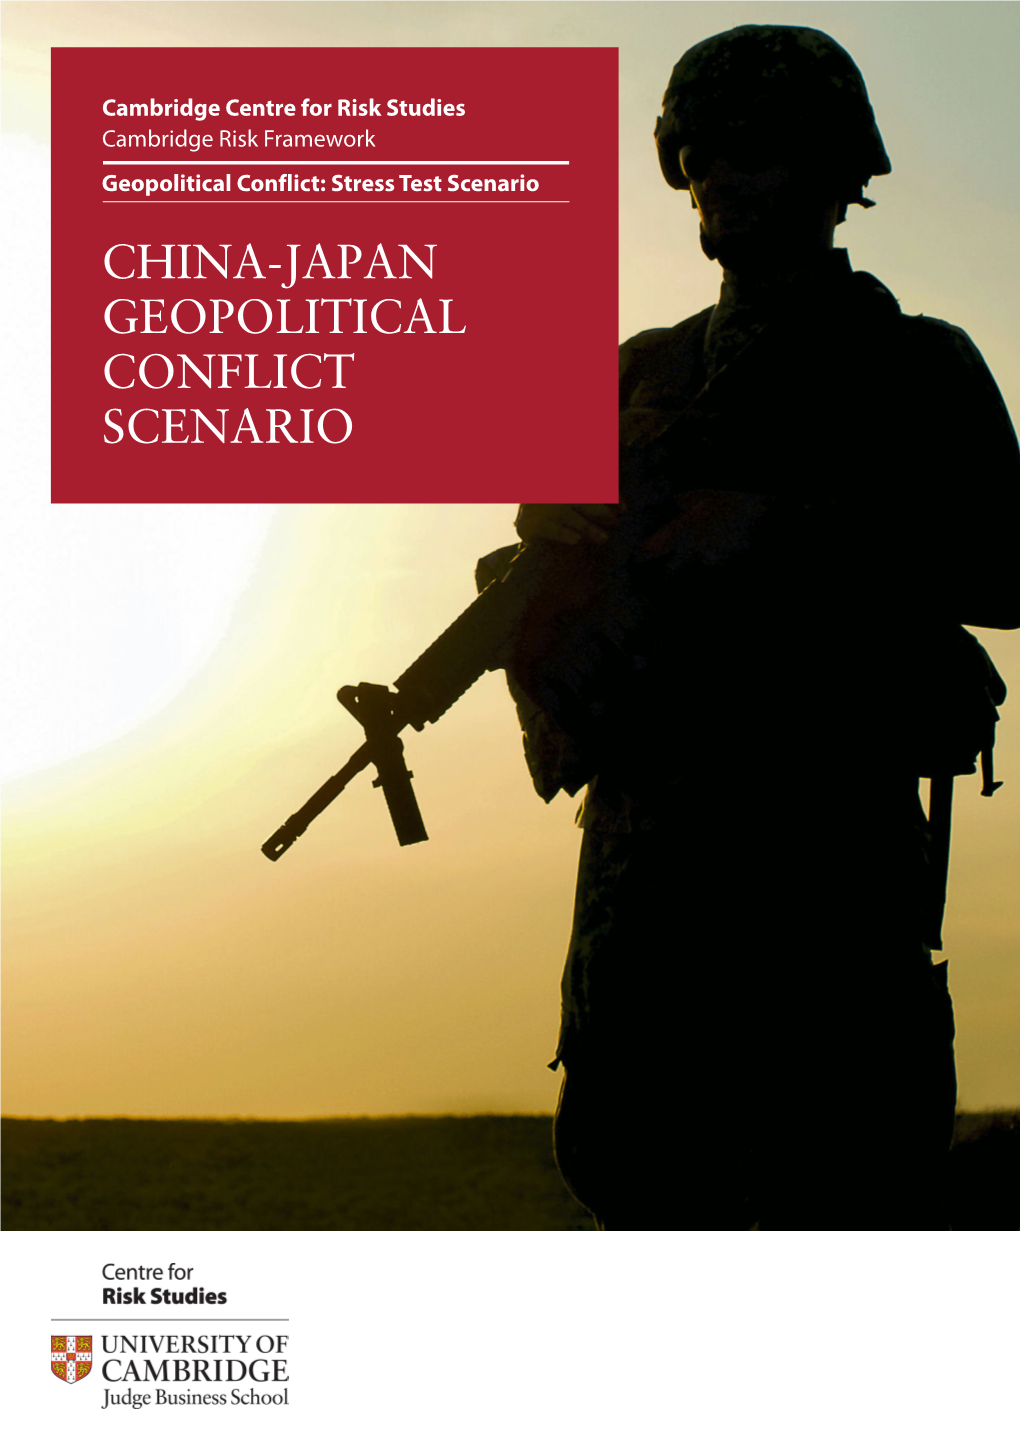 China-Japan Geopolitical Conflict Scenario